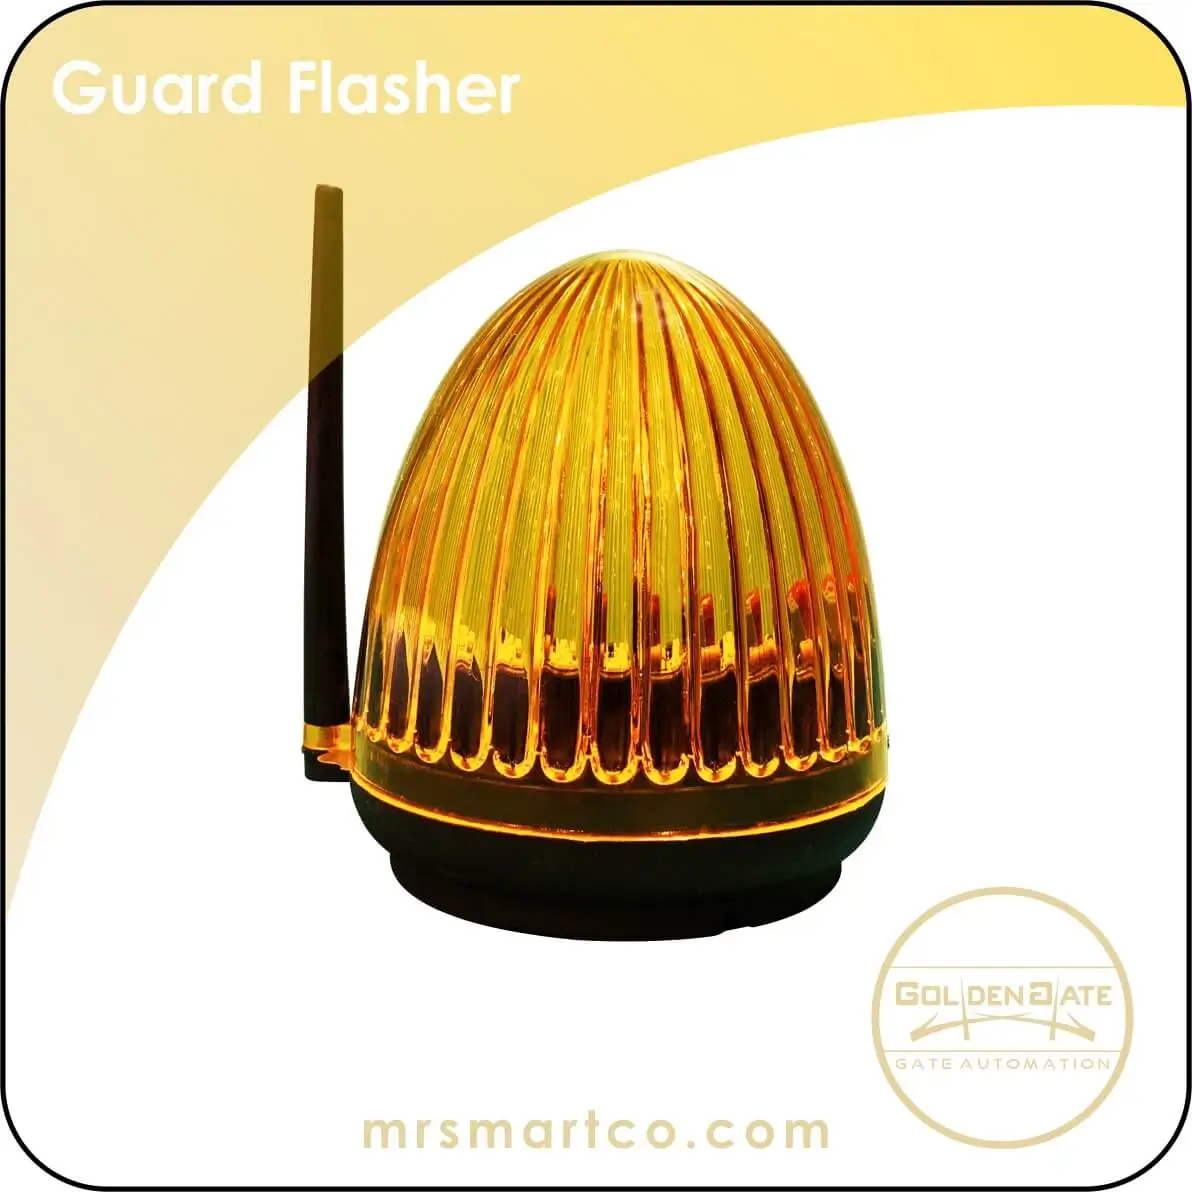 Guard Flasher